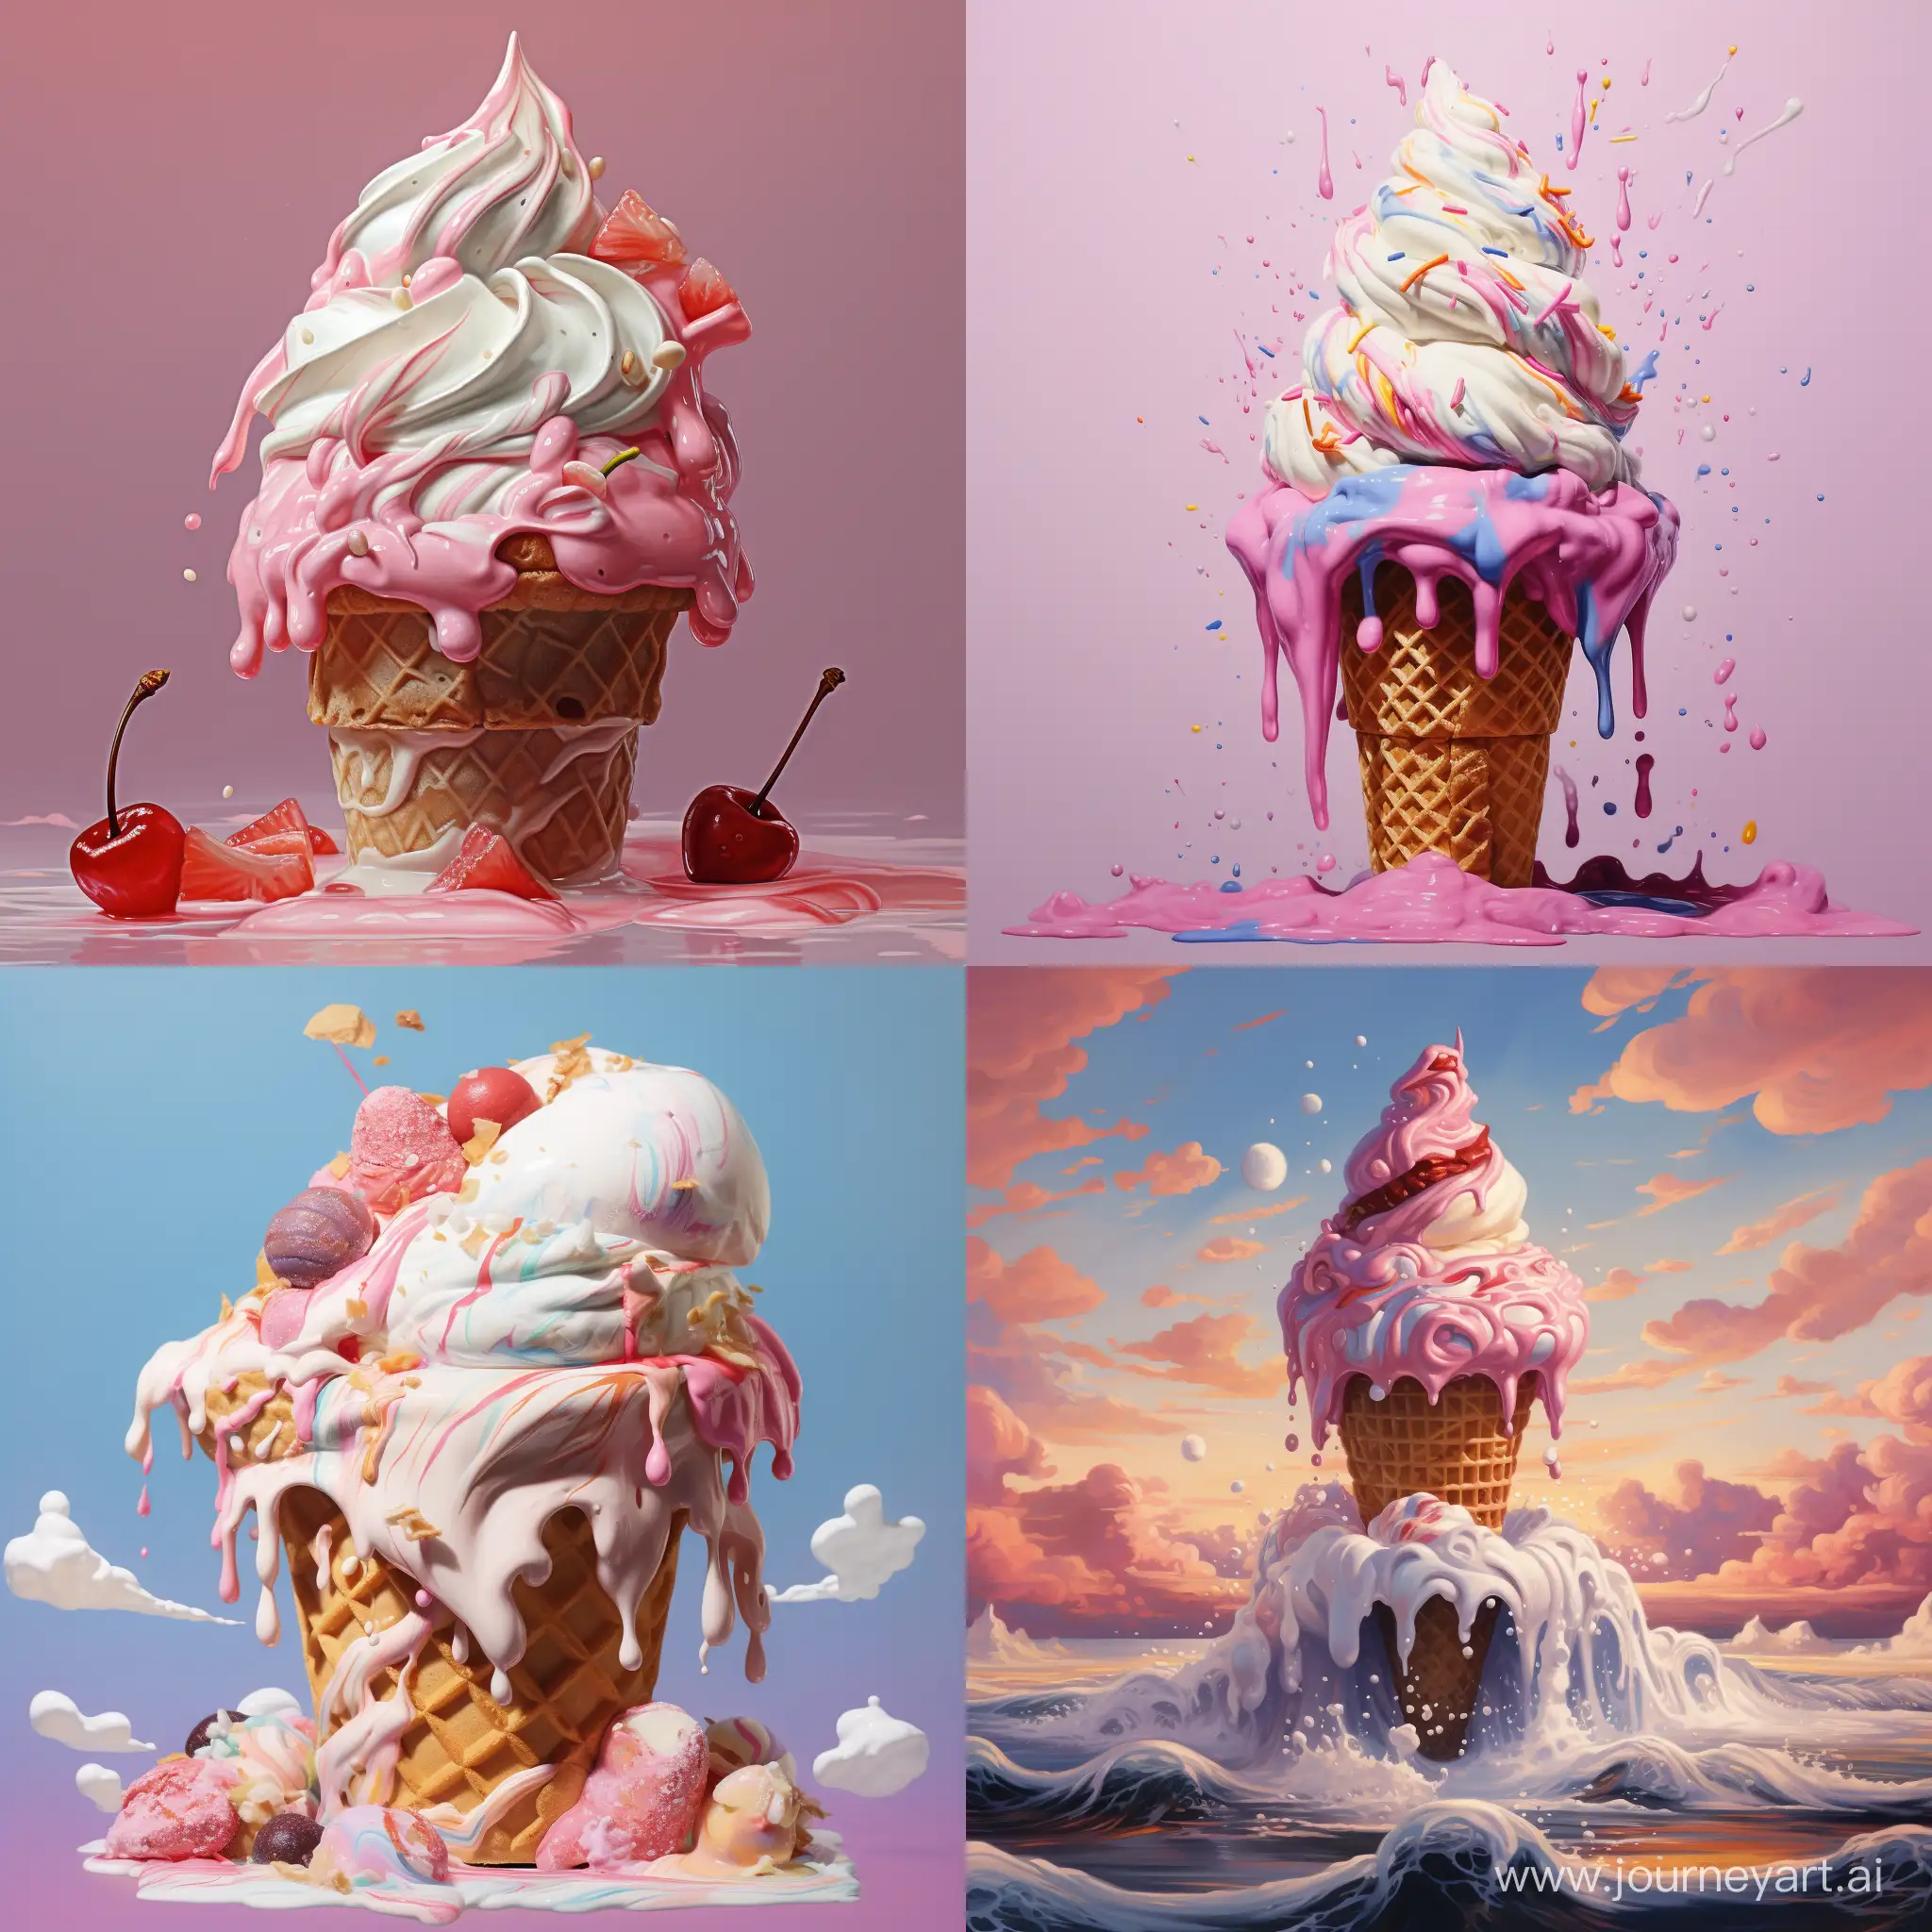 Delicious-Ice-Cream-Creation-in-Perfect-Square-Aspect-Ratio